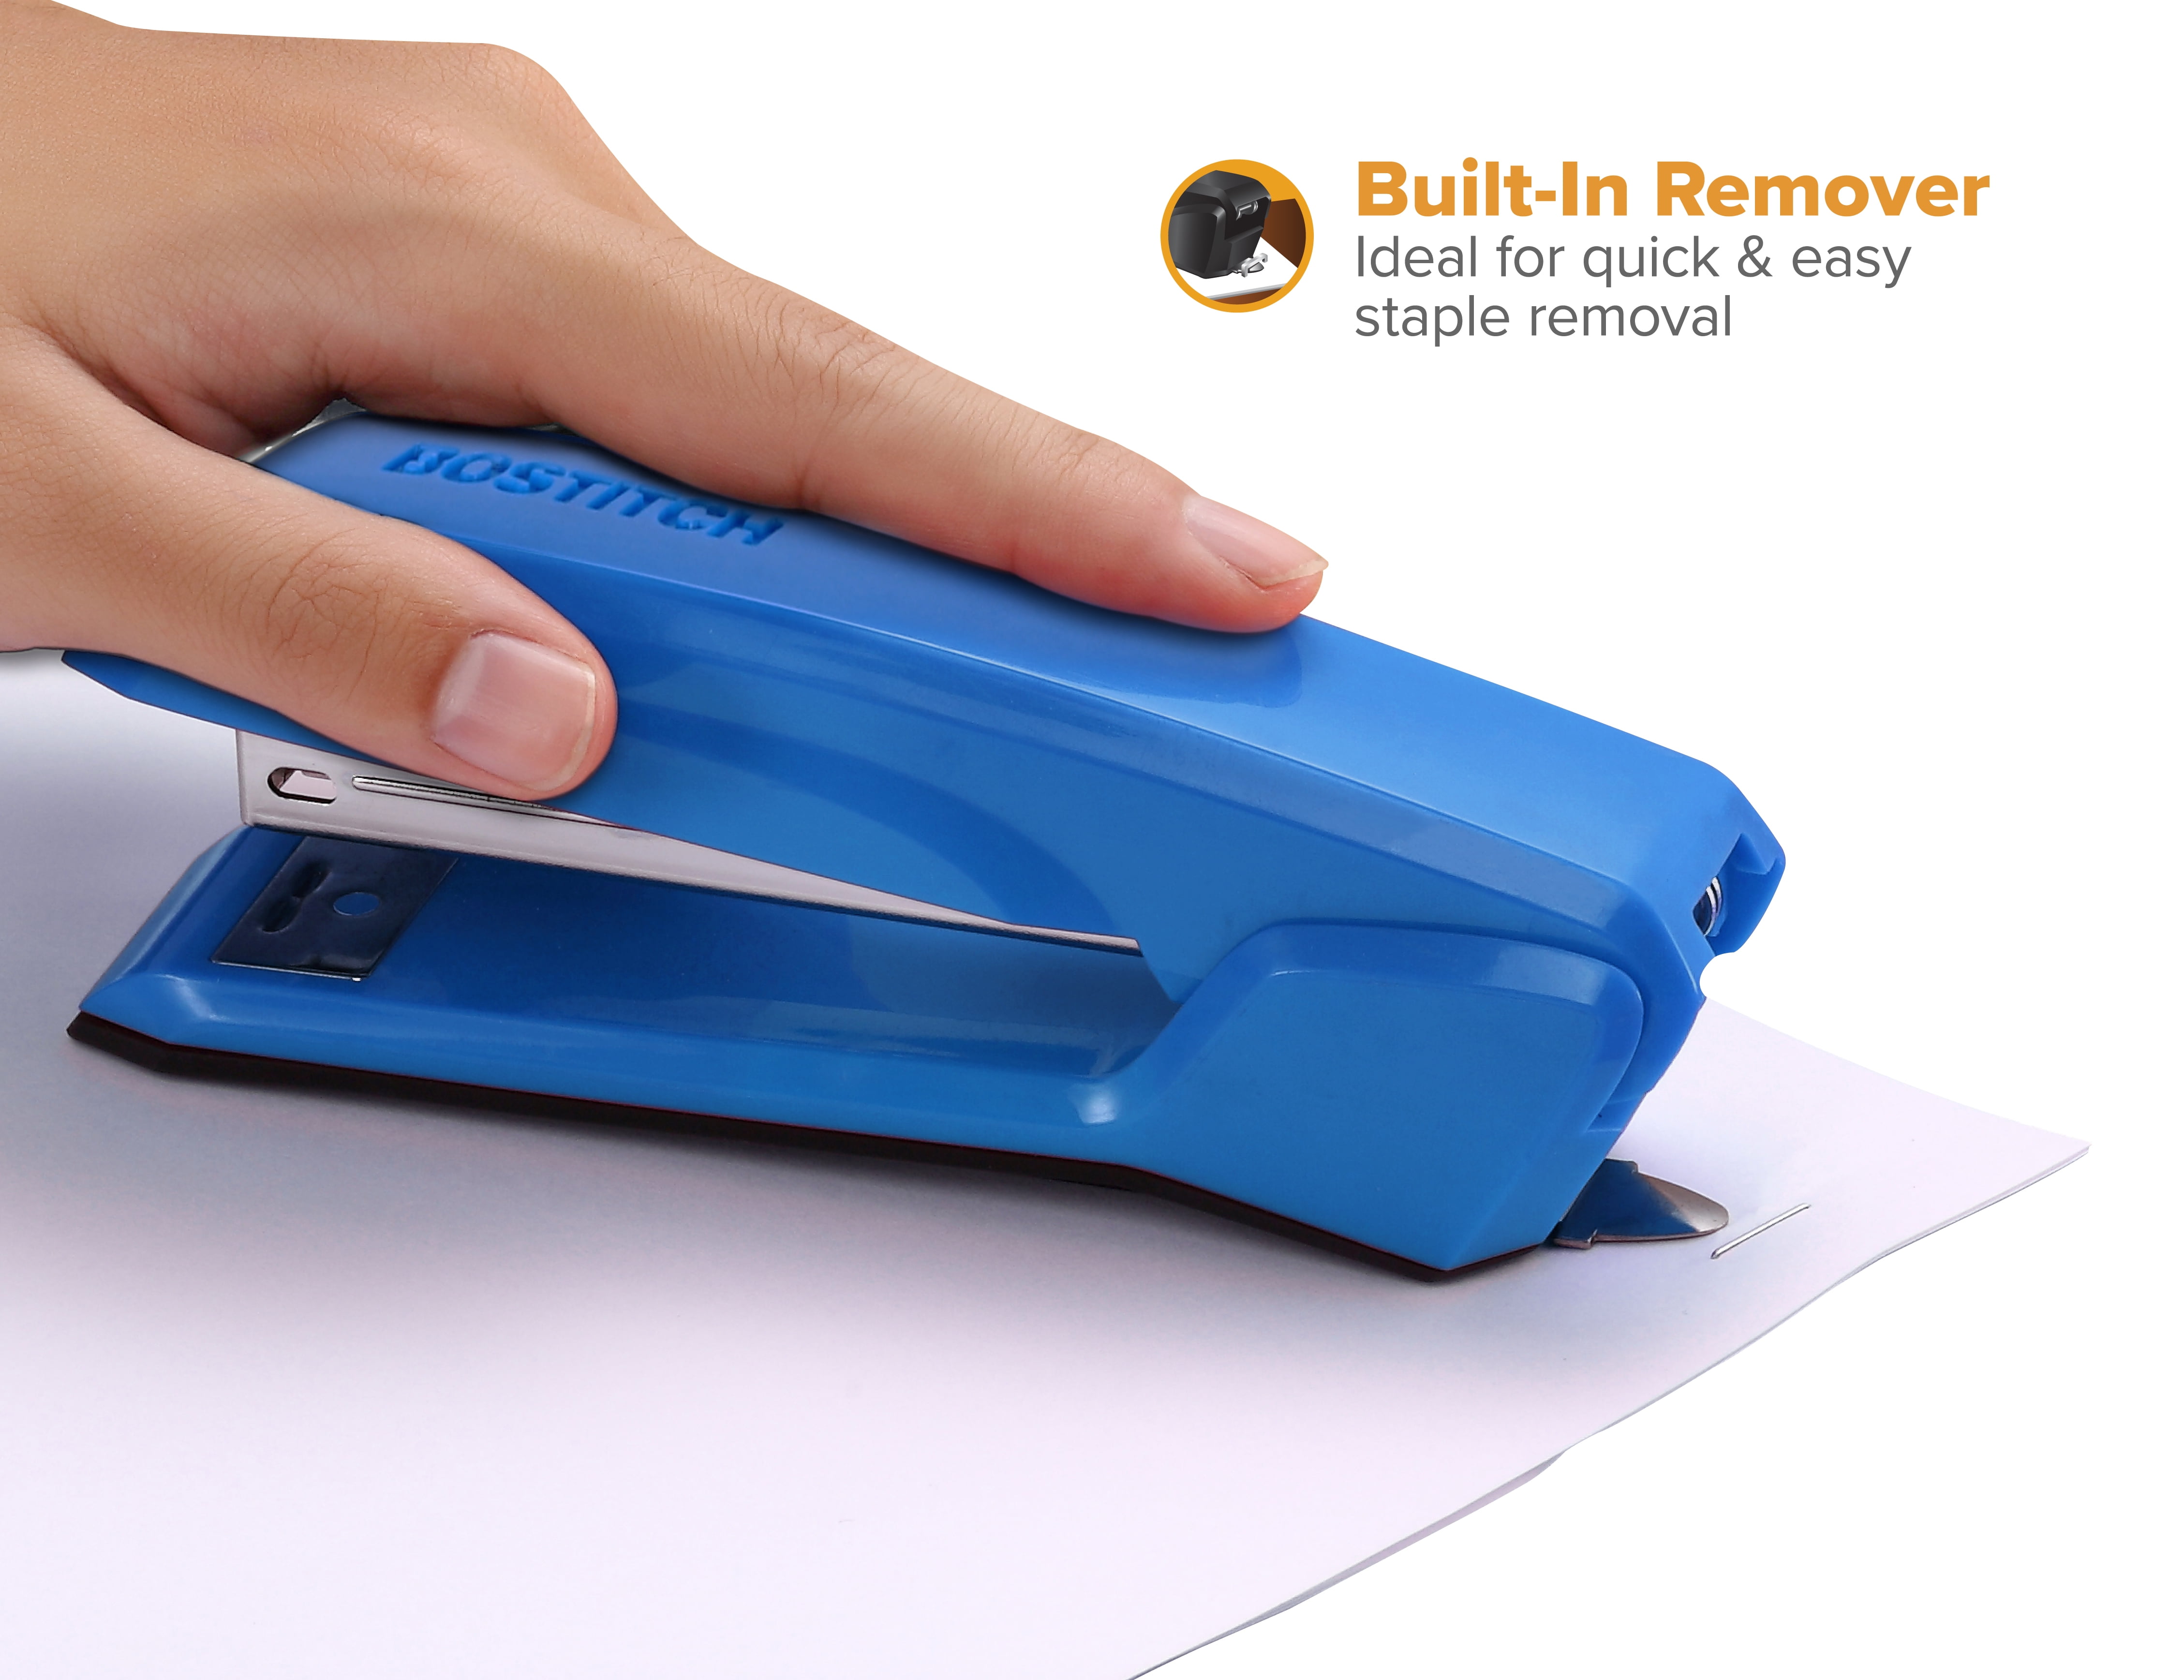 Built-in Staple Remover, Stapler Travel Essentials 1/4 Strip Mini Stapler Set 